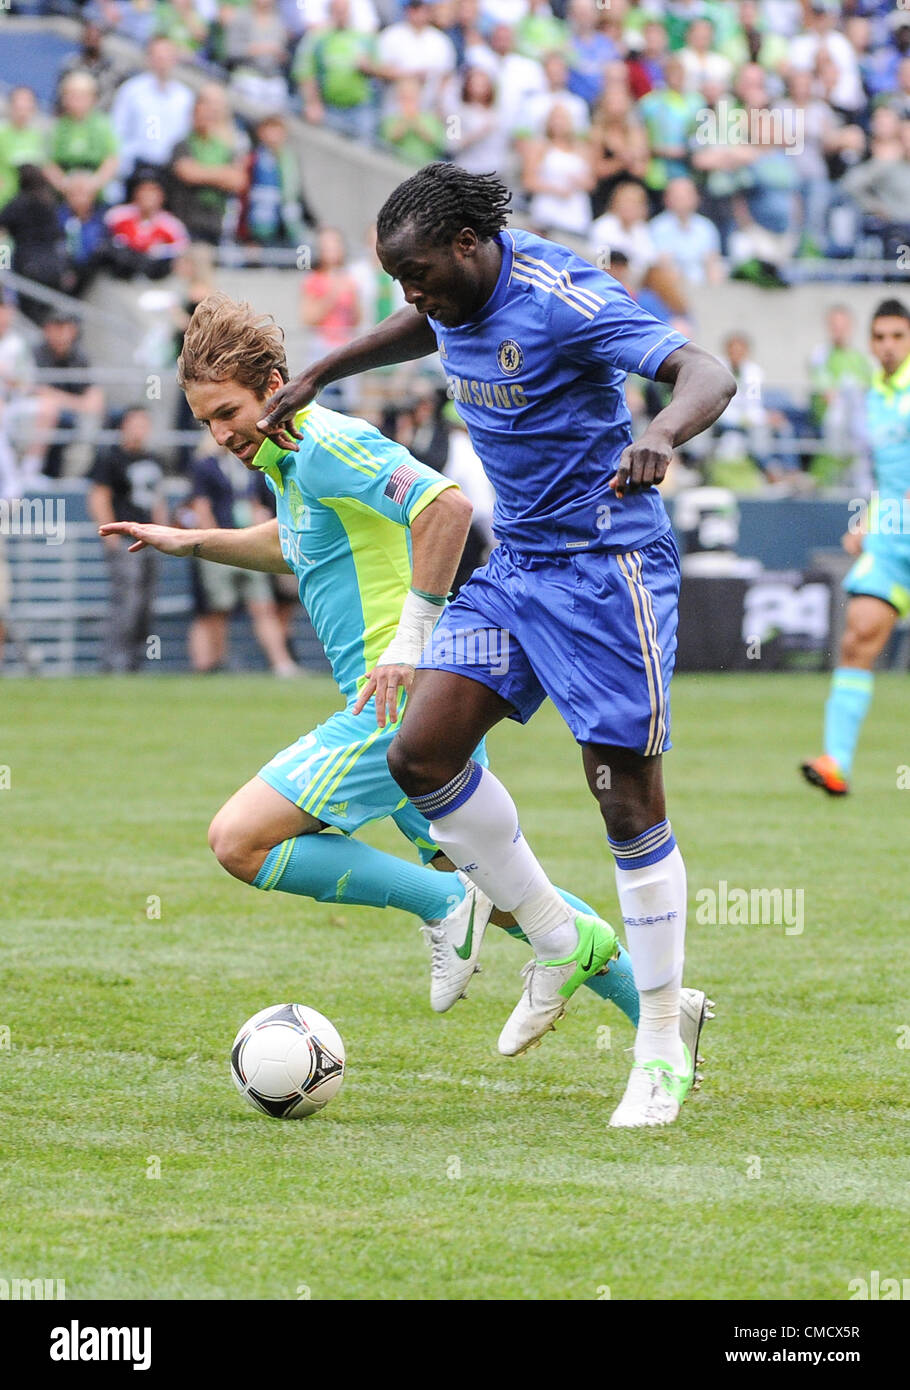 18 juillet 2012 : champ CenturyLink, Seattle, WA : FC Chelsea Romelu Lakaku lors du Défi de football. FC Chelsea a défait les Sounders de Seattle 4-2. Banque D'Images